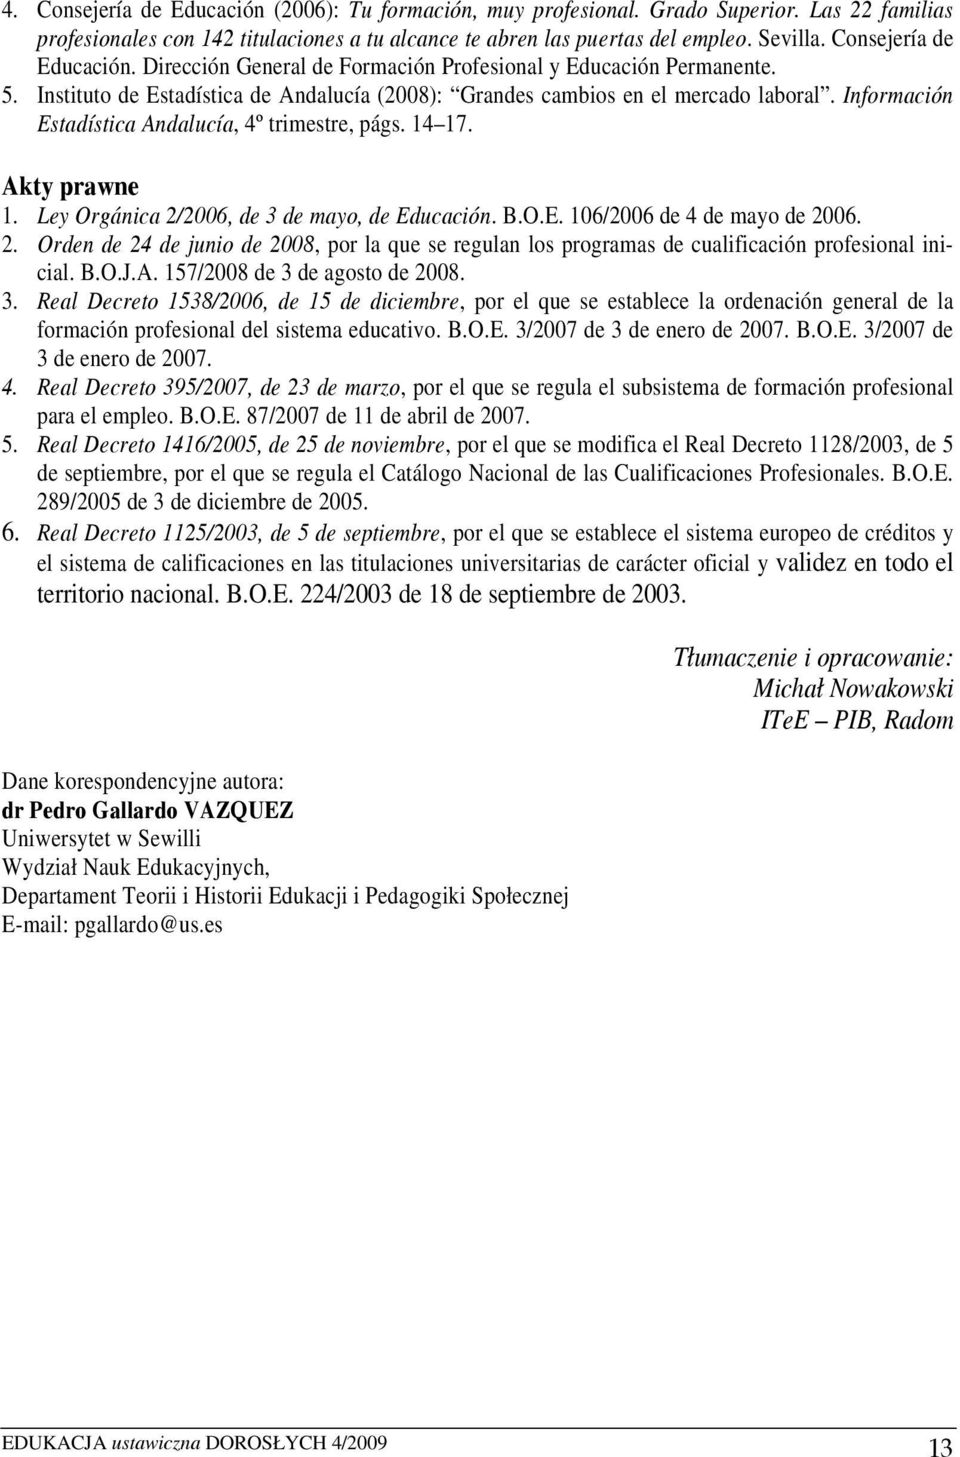 Información Estadística Andalucía, 4º trimestre, págs. 14 17. Akty prawne 1. Ley Orgánica 2/2006, de 3 de mayo, de Educación. B.O.E. 106/2006 de 4 de mayo de 2006. 2. Orden de 24 de junio de 2008, por la que se regulan los programas de cualificación profesional inicial.